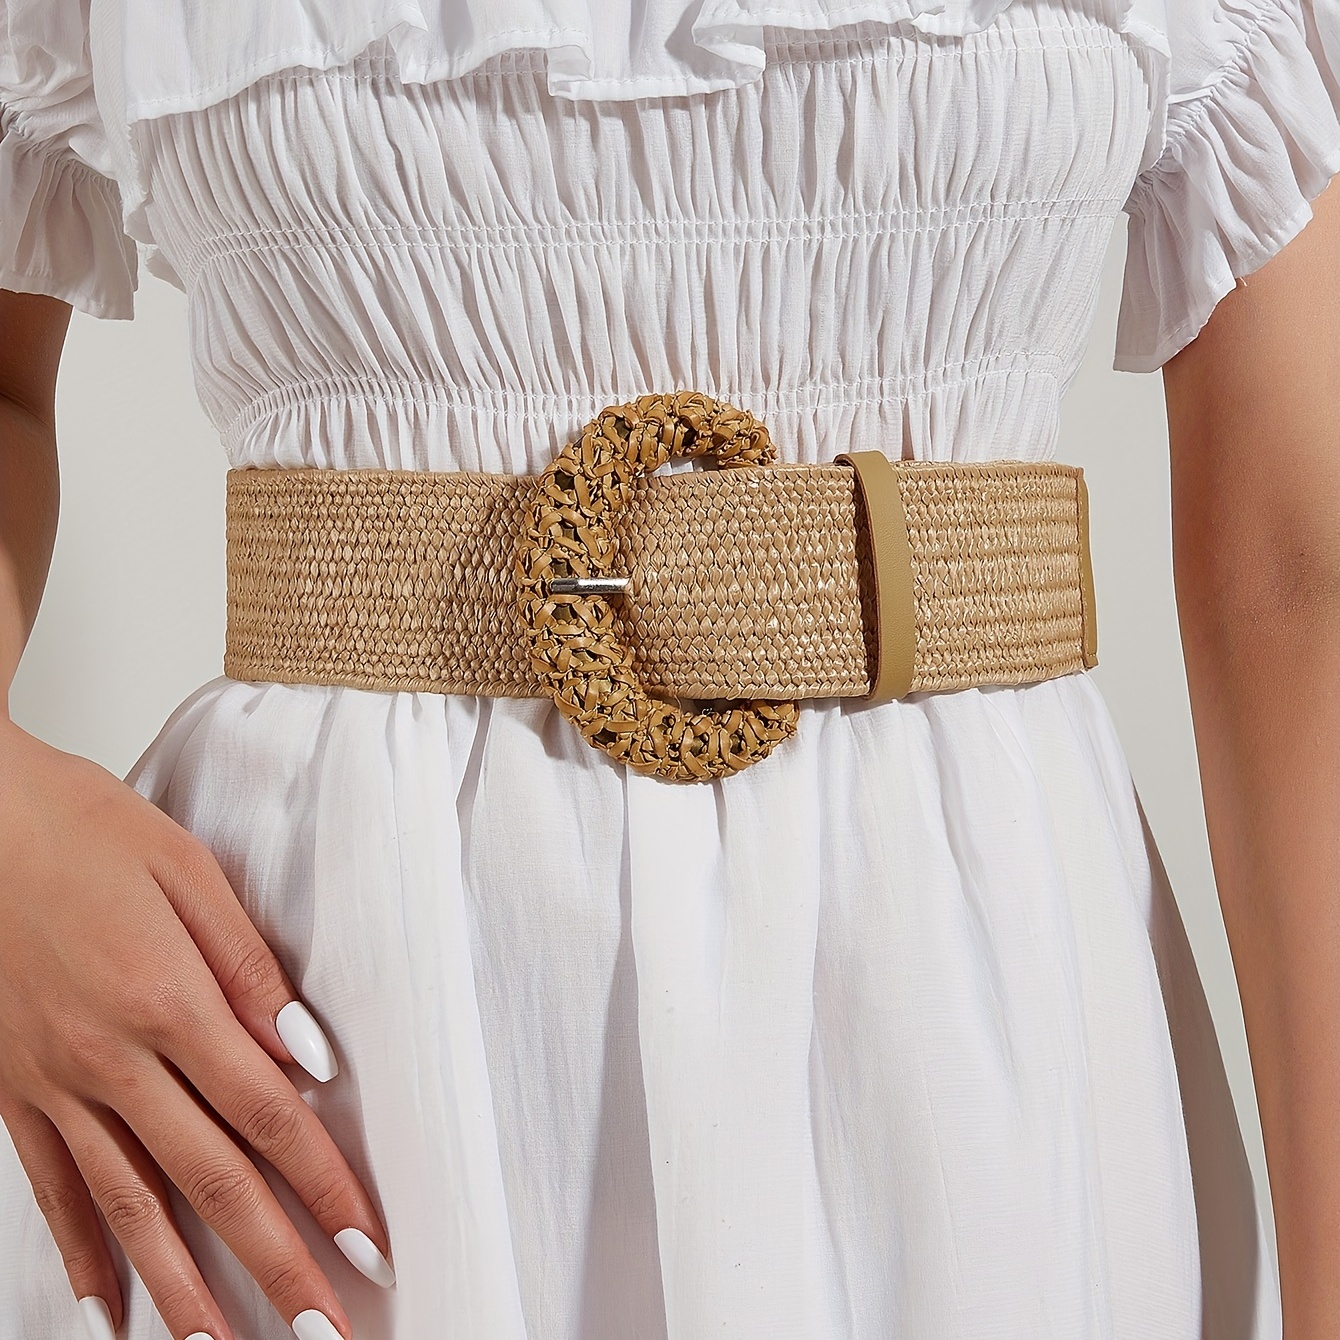 Ladies Waist Belt Straw Weave Gold Braided Belts Irregular Metal